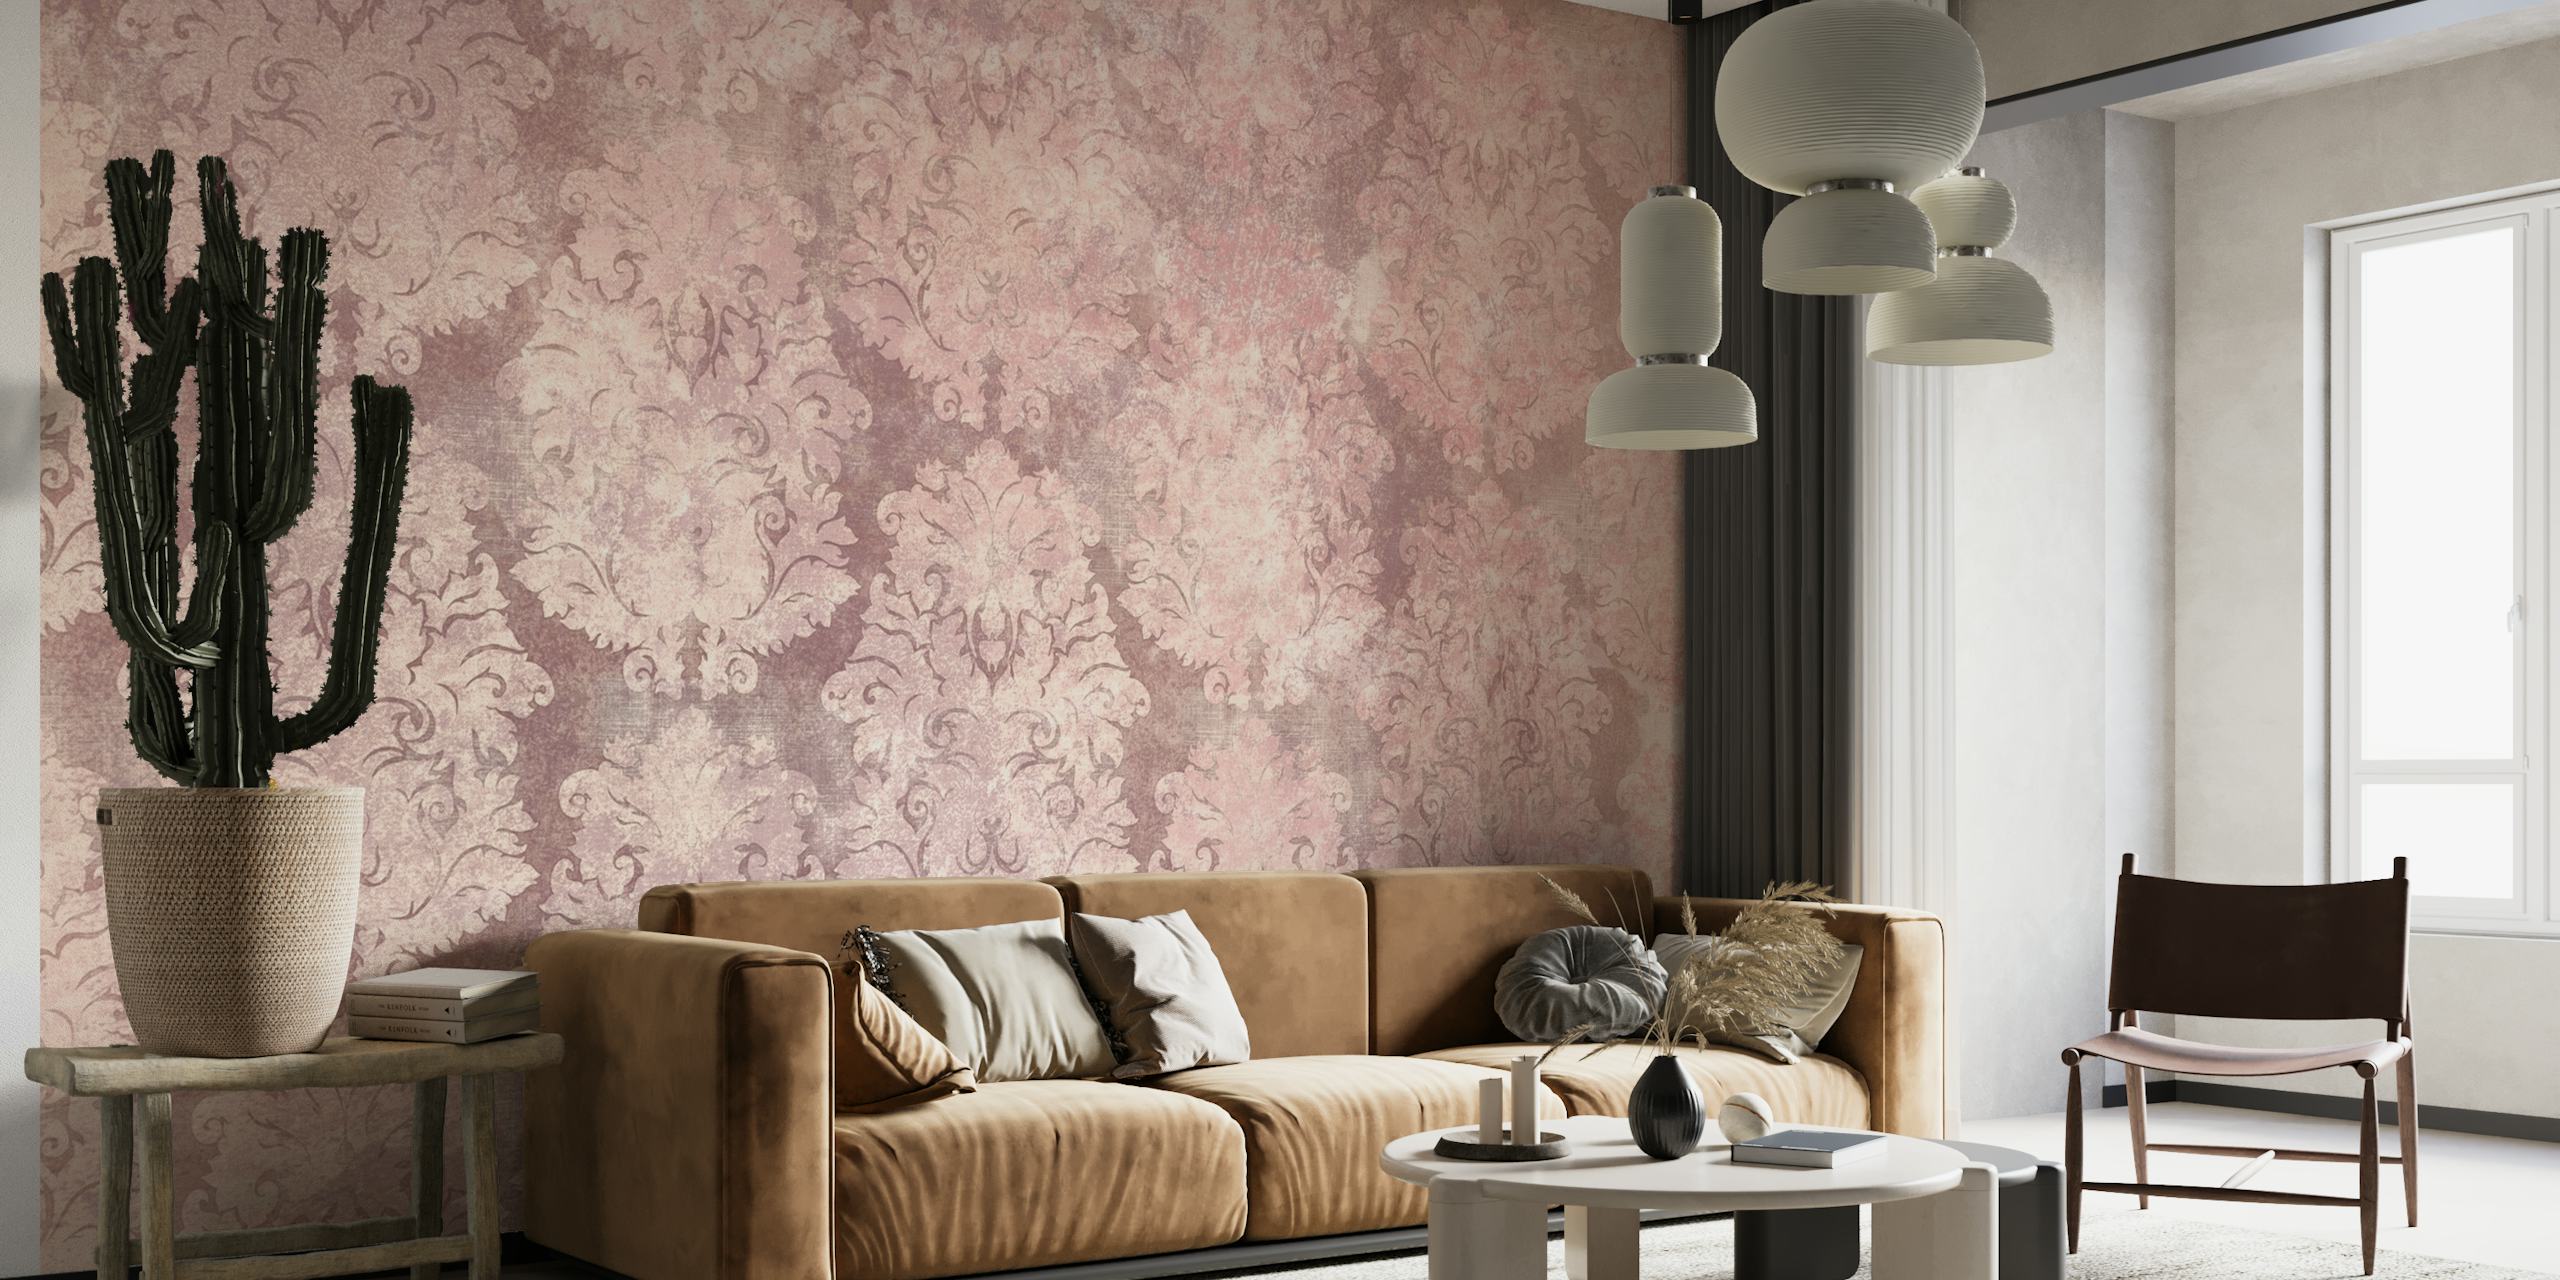 Sierlijk roze damastpatroonbehang dat een vintage charme aan het interieur toevoegt